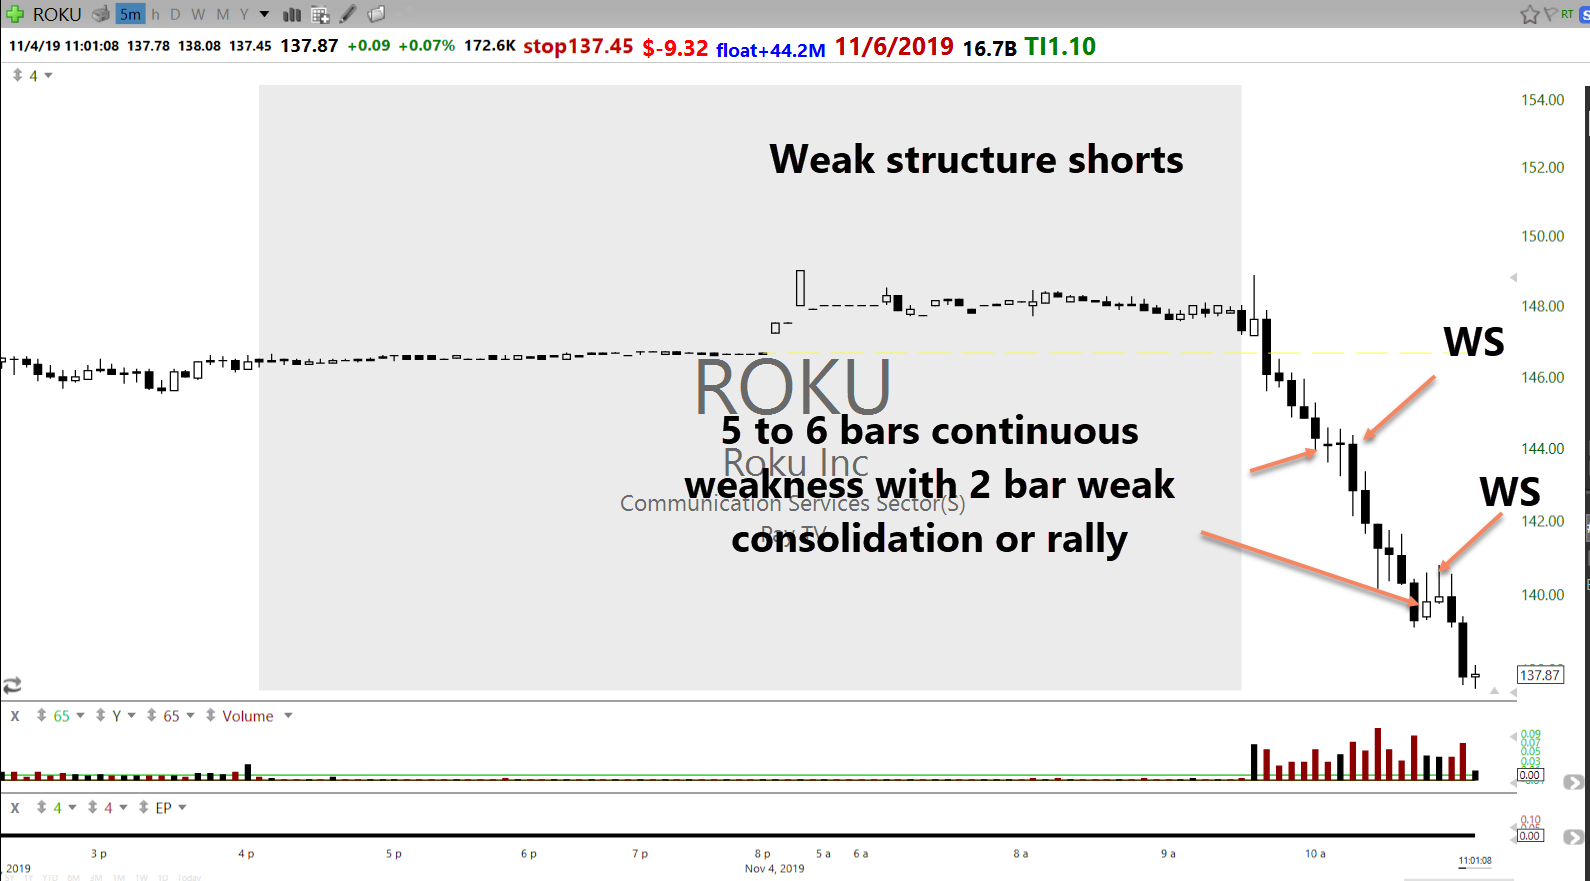 Stockbee: ROKU weak structure short intraday